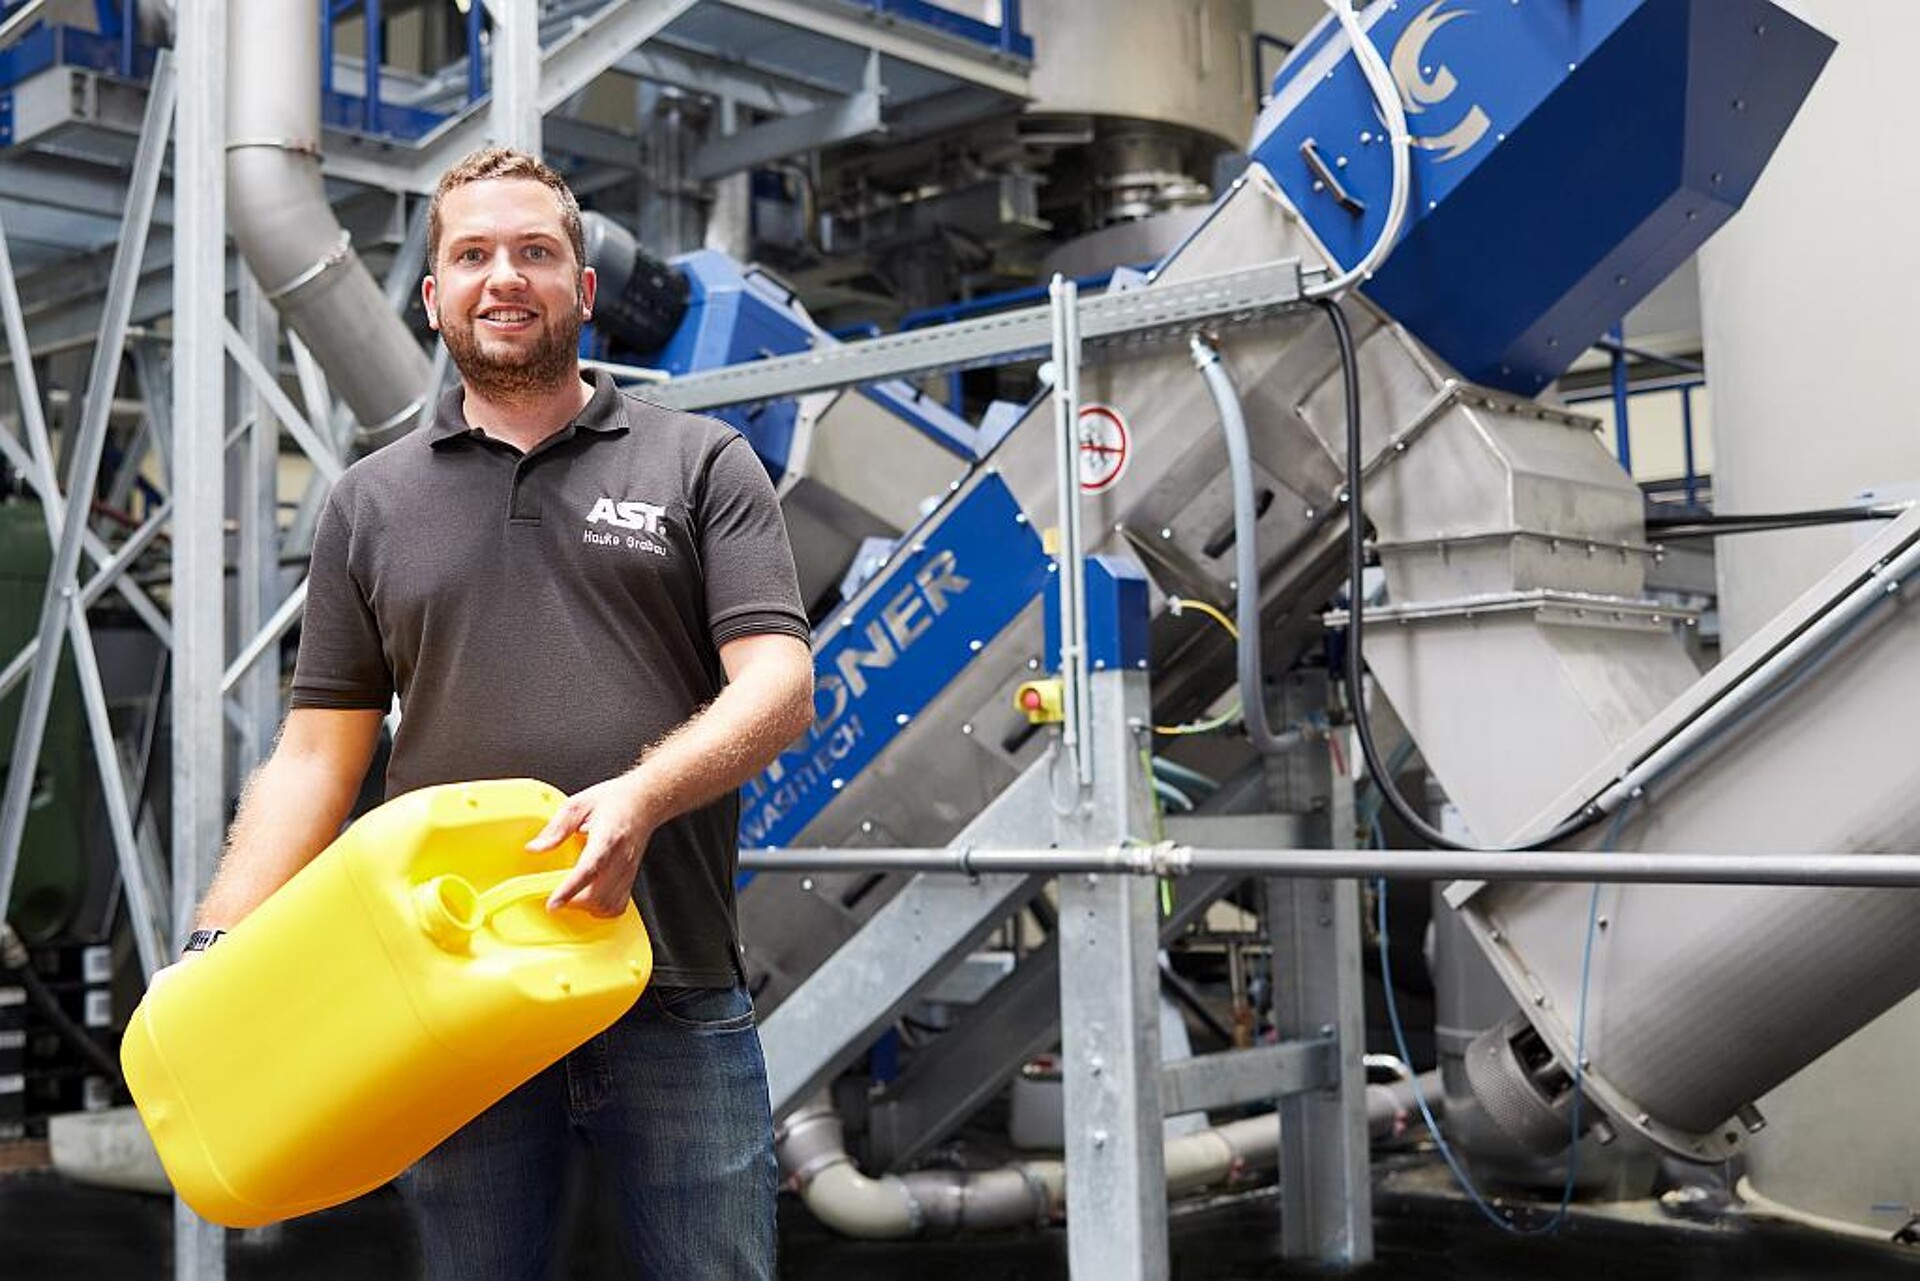 Hauke Grabau, Leiter des Bereichs Recycling bei der AST Kunststoffverarbeitung, vor der Lindner-Kunststoffrecycling-Anlage. In seinen Händen: einer der vielen AST-Kanister, die mit dem recycelten Granulat hergestellt werden. (Foto: Lindner)